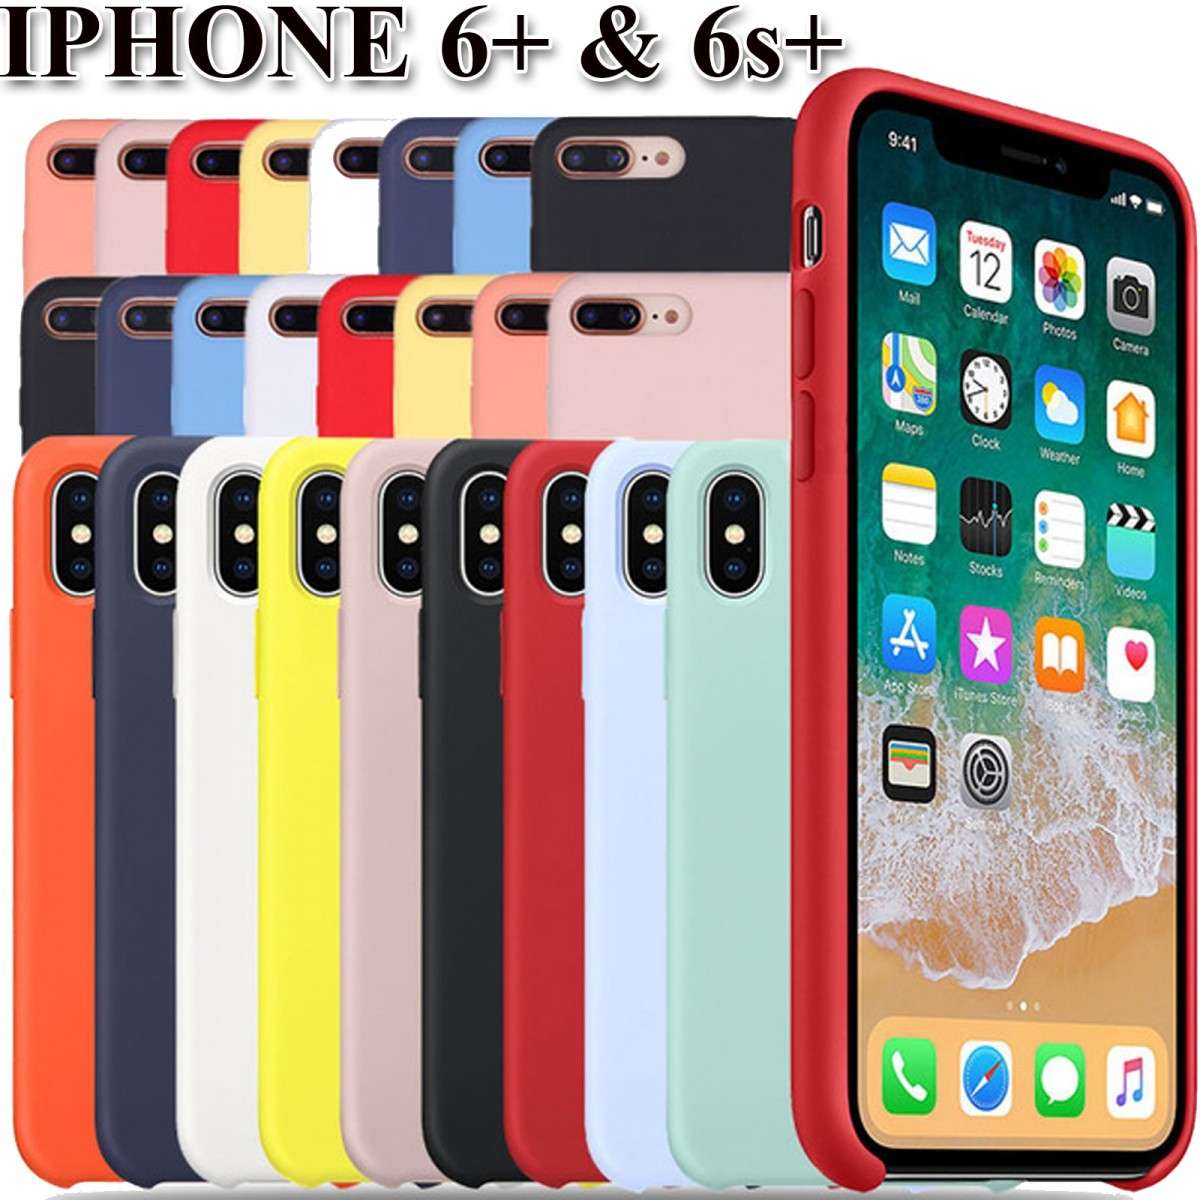 elago - Funda de silicona para iPhone 11 |Color|, silicona líquida prémium,  borde elevado (protección de pantalla y cámara), estructura de 3 capas